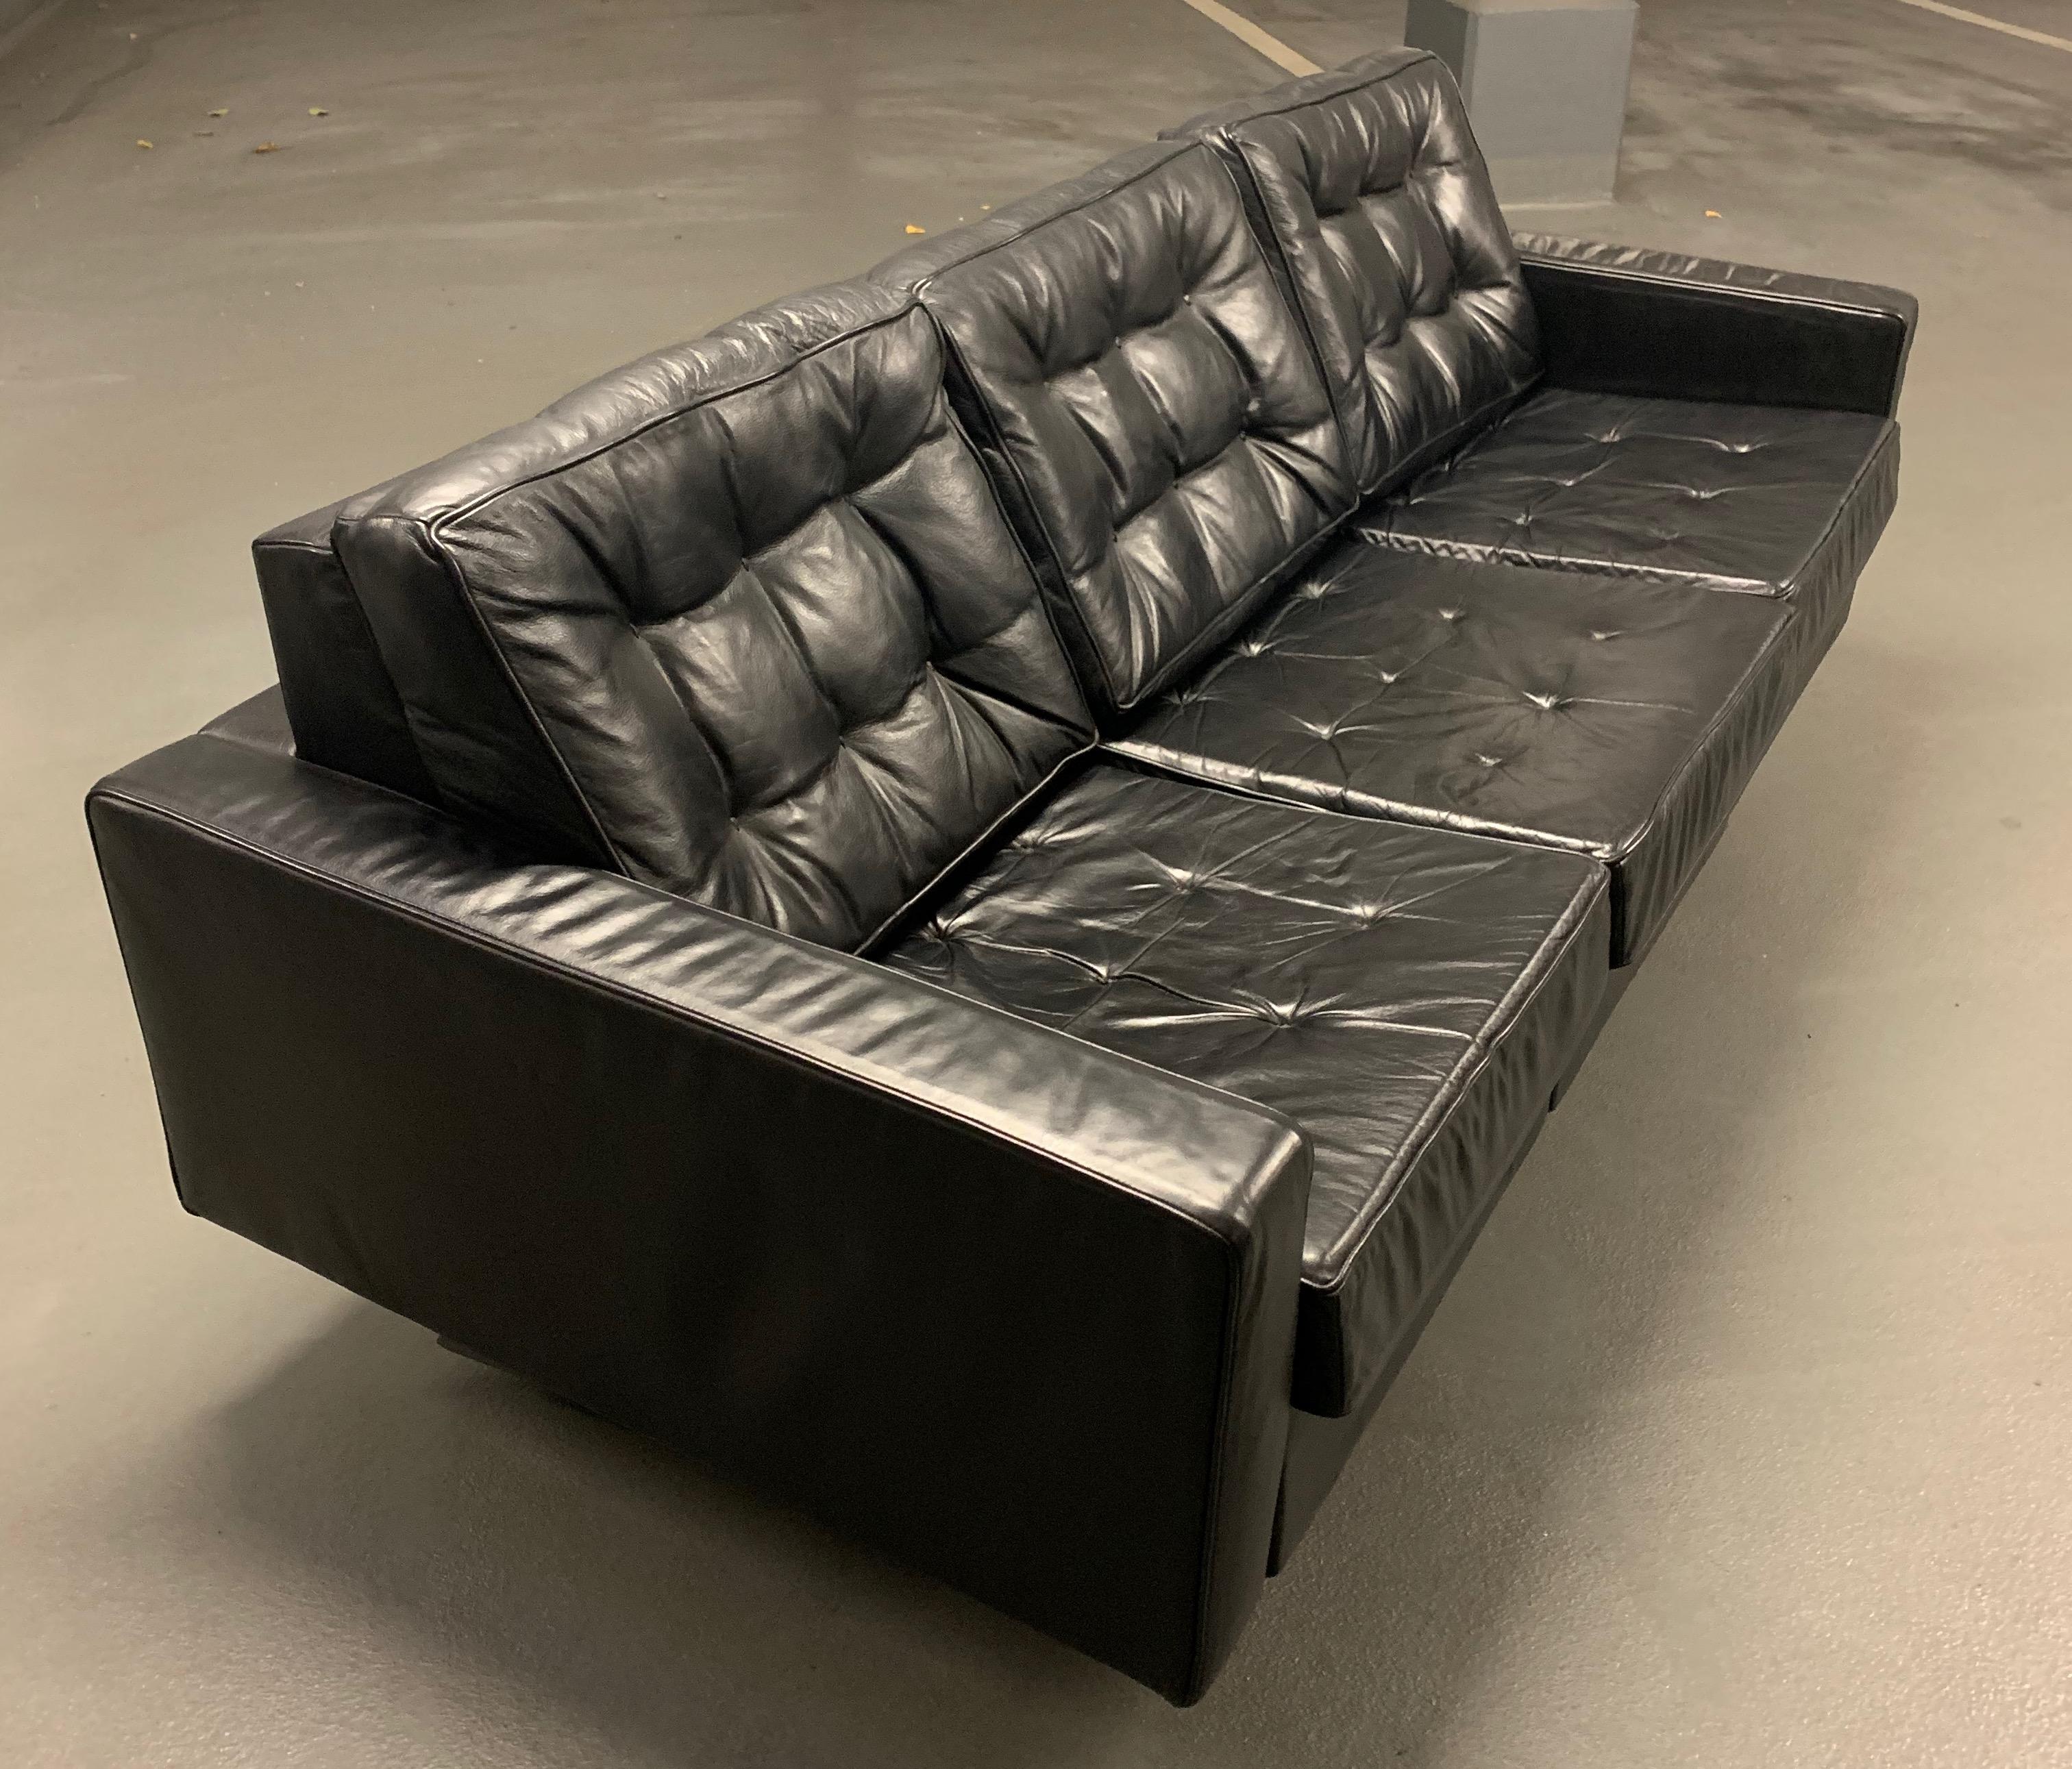 Hochwertiges Leder und drei verstellbare Sitze machen dieses Sofa zum exquisitesten Sofa, das De Sede je produziert hat. Daunengefüllte Rückenkissen und eine tolle Mechanik, mit der Sie Ihre entspannteste Position finden. Meiner Meinung nach muss